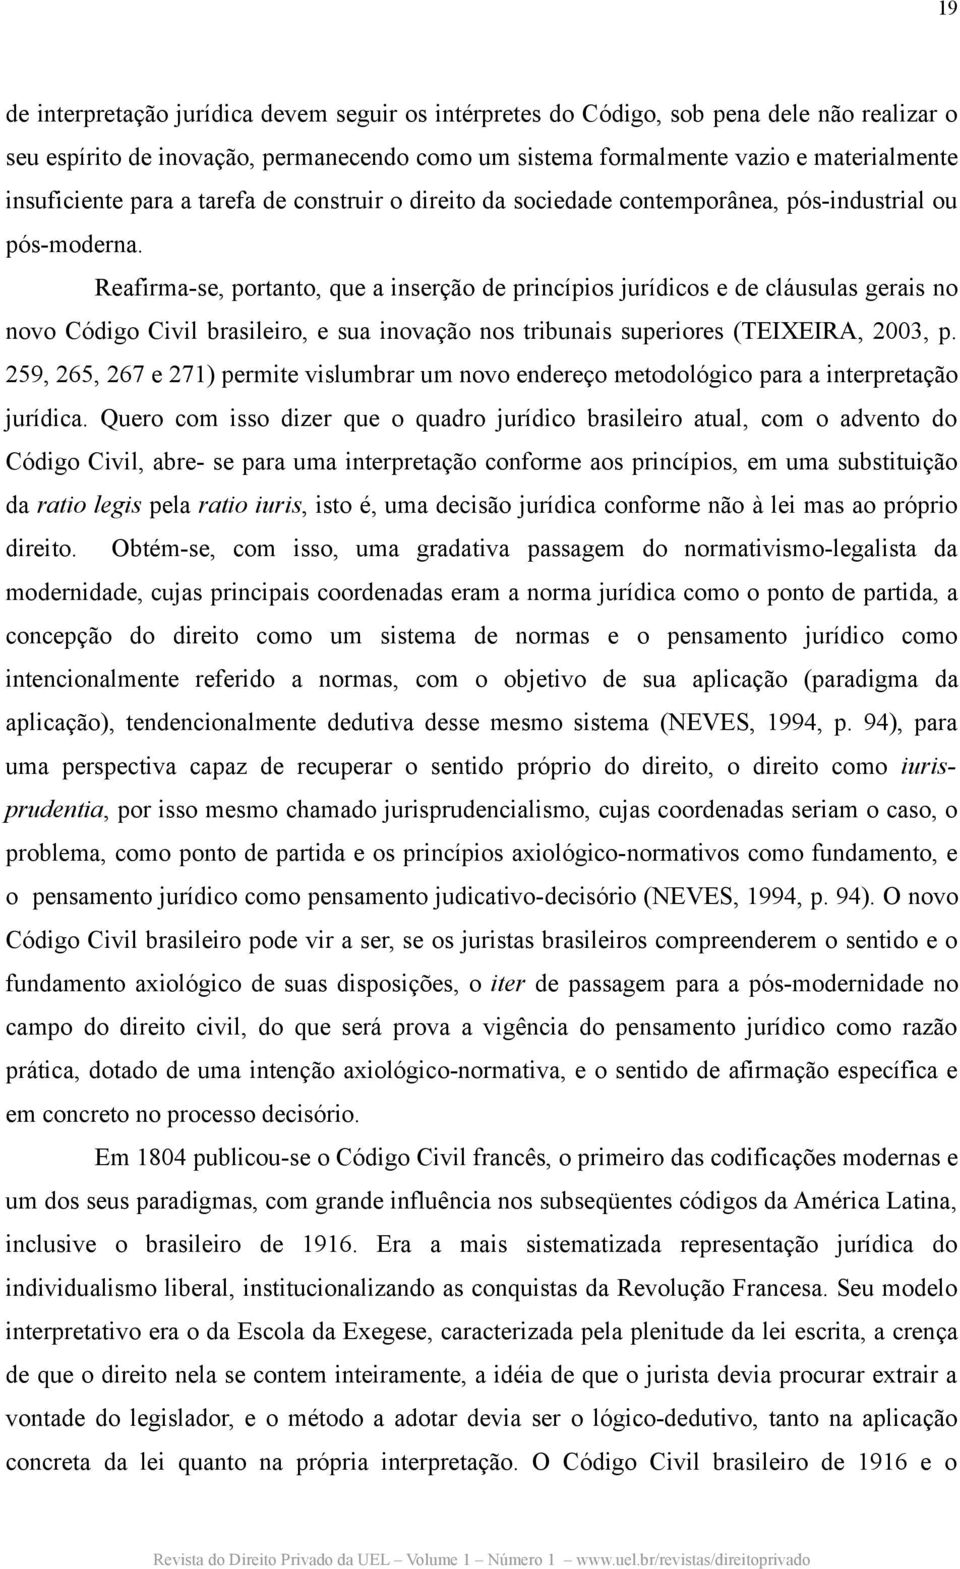 Reafirma-se, portanto, que a inserção de princípios jurídicos e de cláusulas gerais no novo Código Civil brasileiro, e sua inovação nos tribunais superiores (TEIXEIRA, 2003, p.